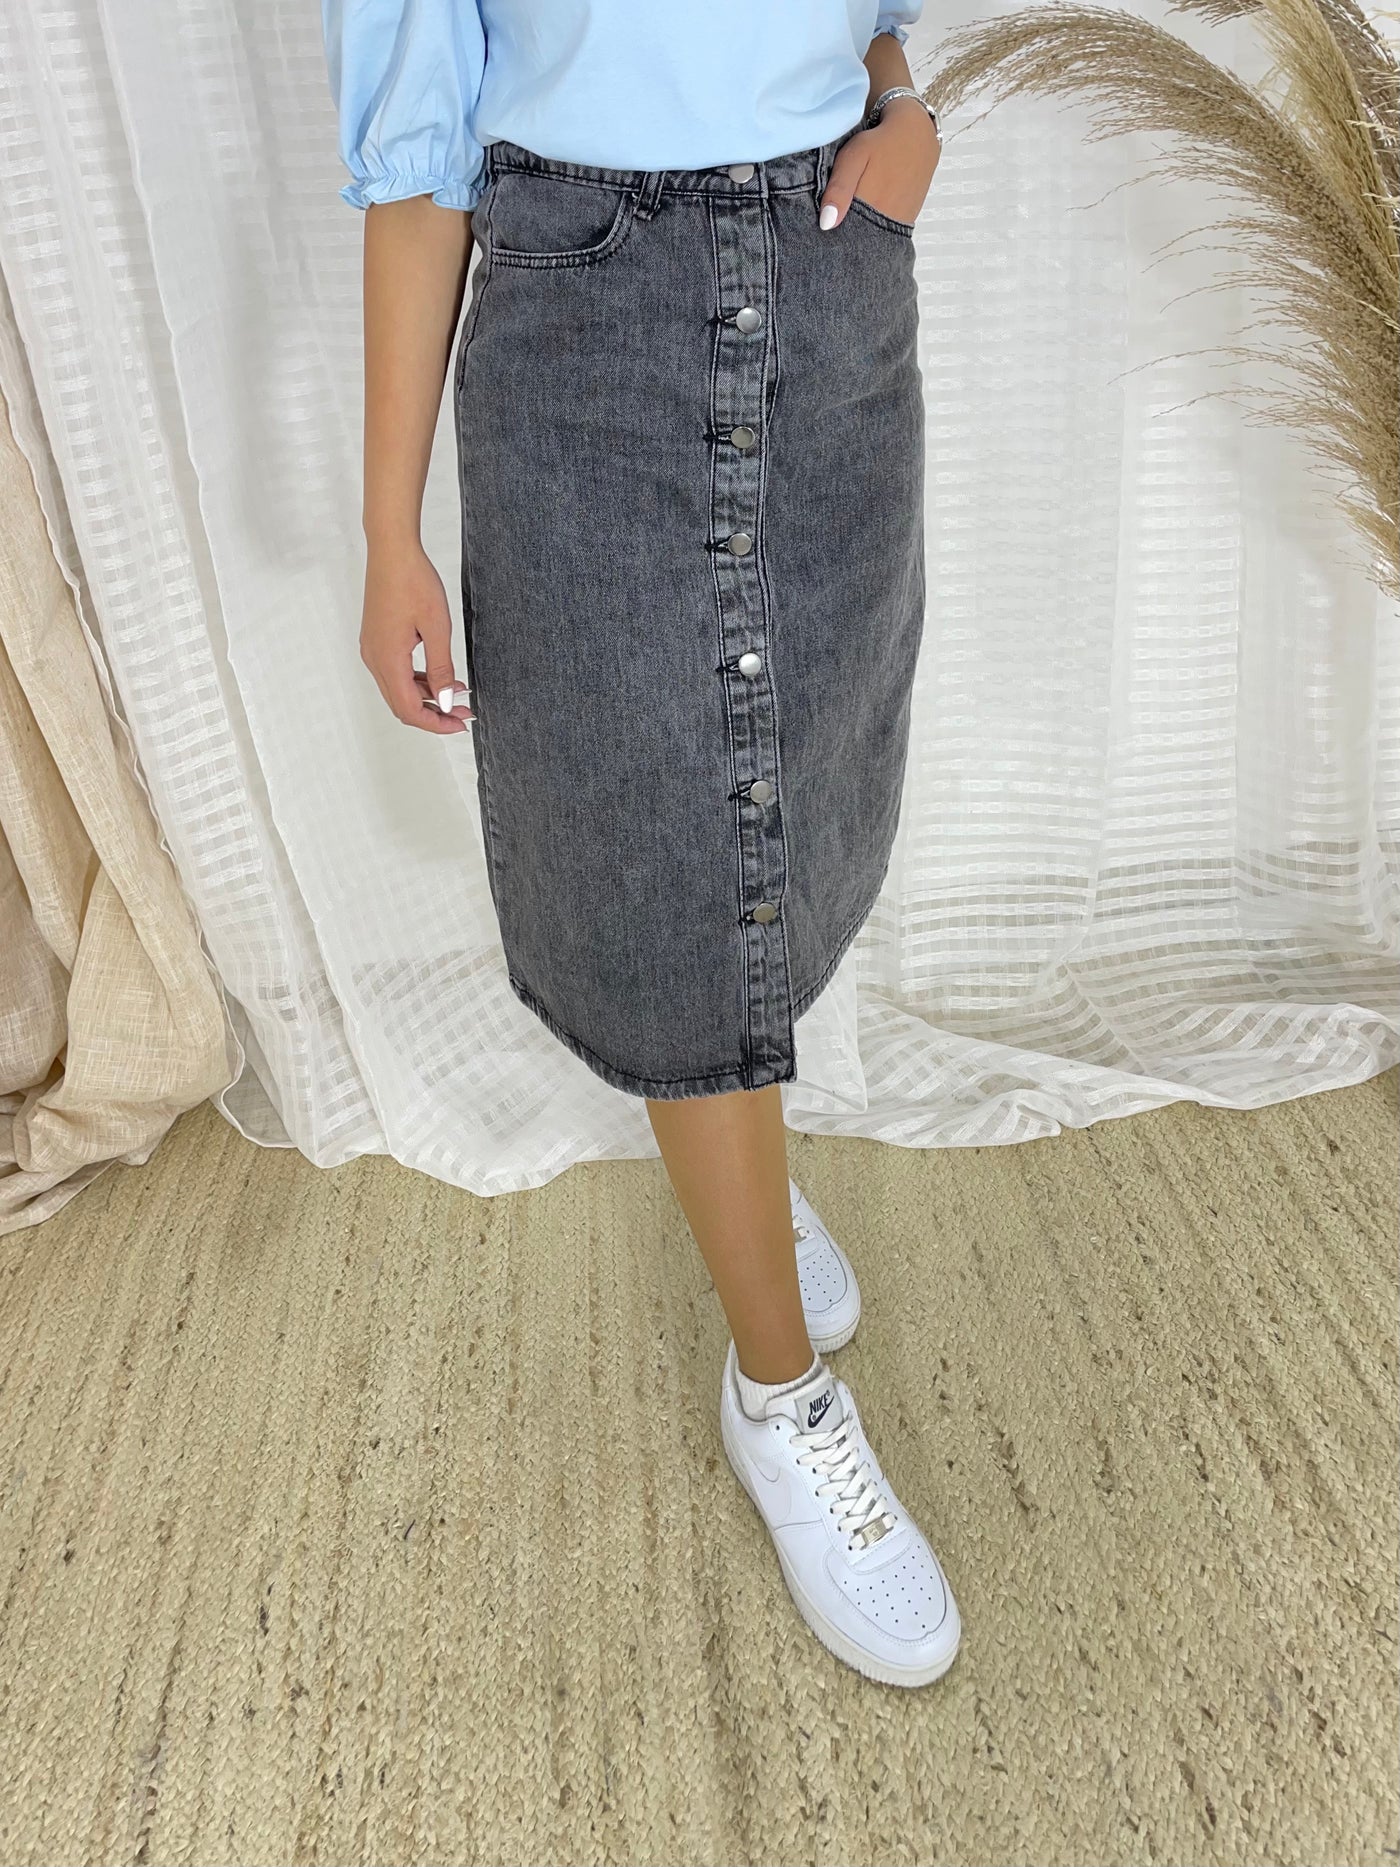 ארוכה -מיני אלנביA חצאית ג'ינס כפתורים גזרה – MiniAllenby